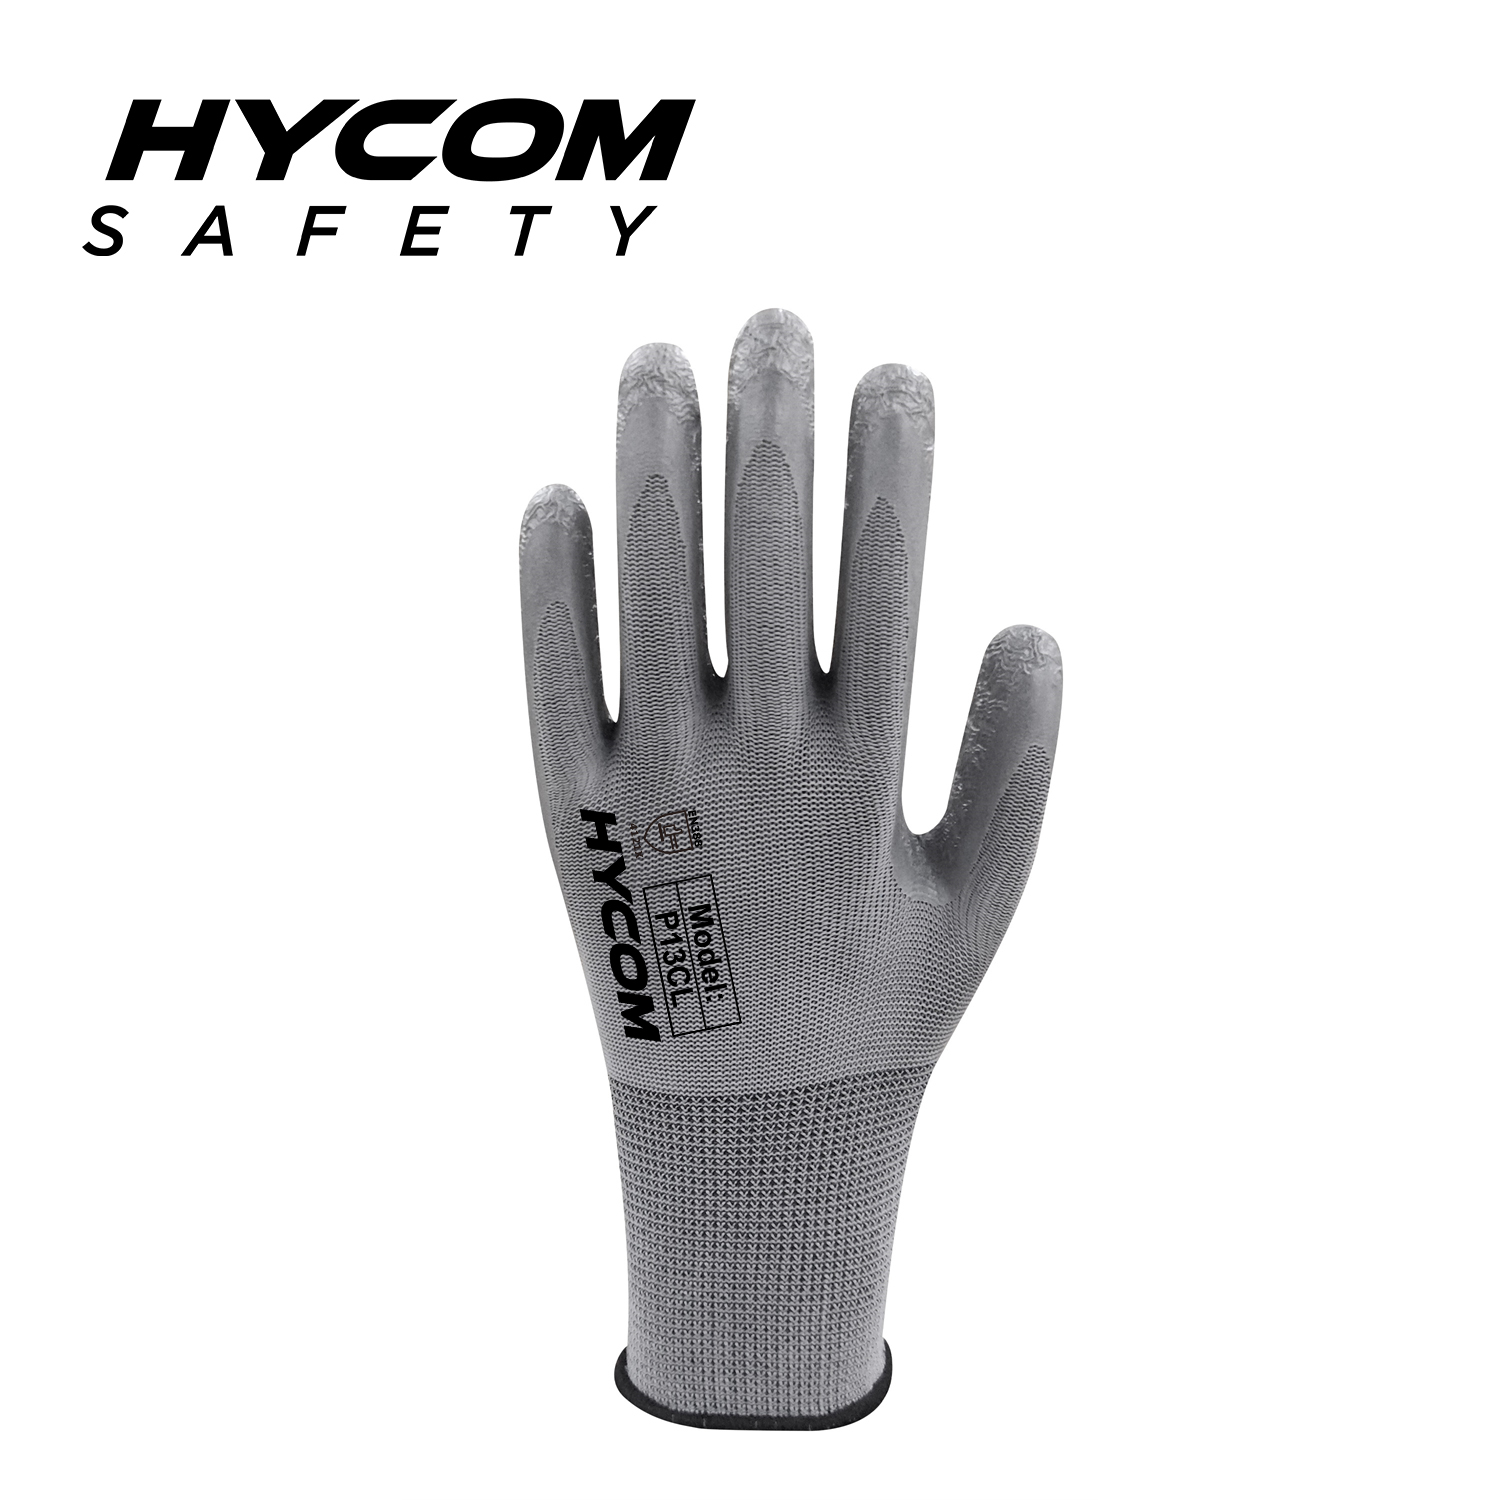 HYCOM Arbeitshandschuh aus 13G-Polyester mit Crinkle-Latex-Beschichtung an der Handfläche, Super-Grip-Sicherheitshandschuh